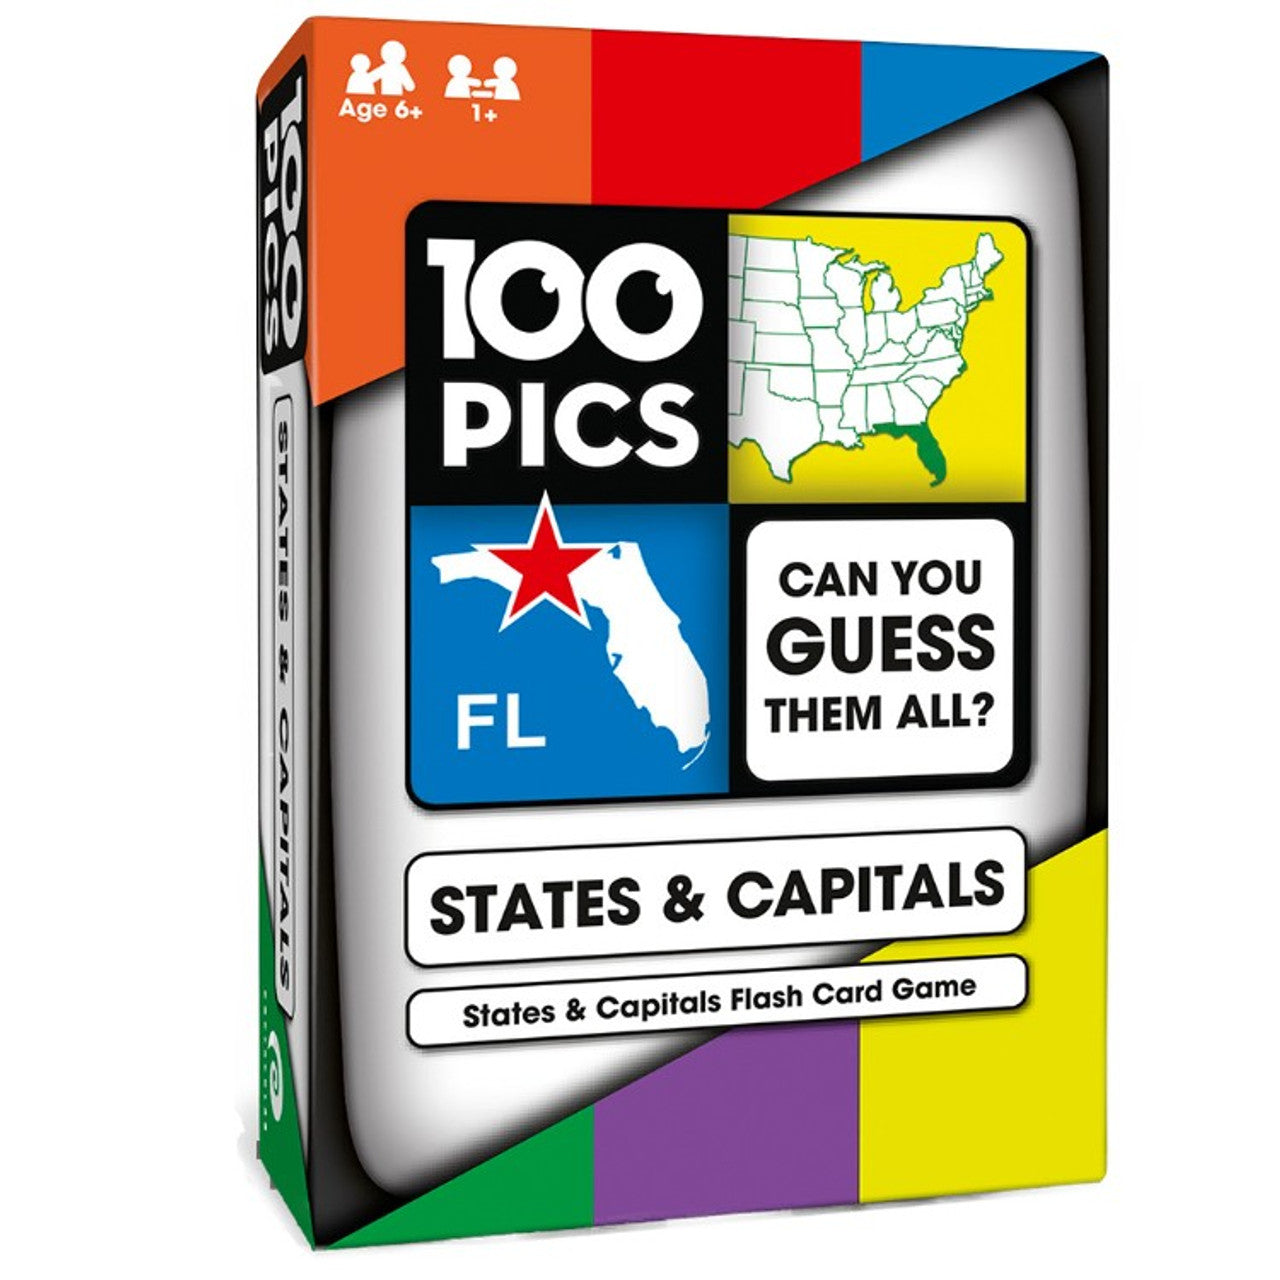 100 Pics: States & Capitals